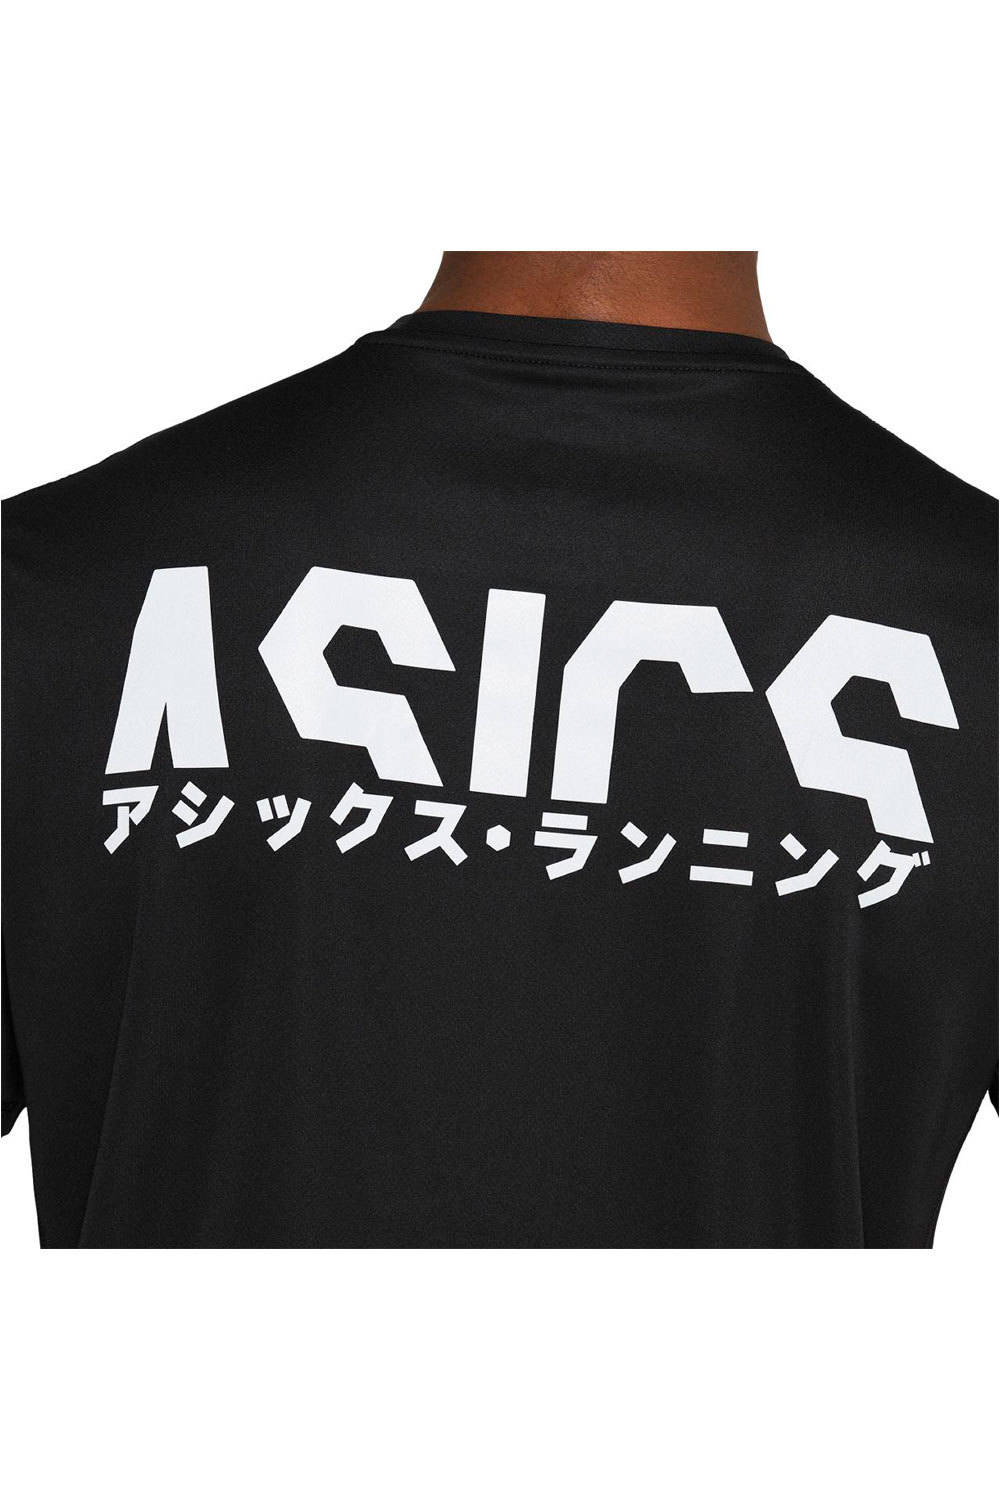 Asics camiseta técnica manga corta hombre KATAKANA SS TOP 04